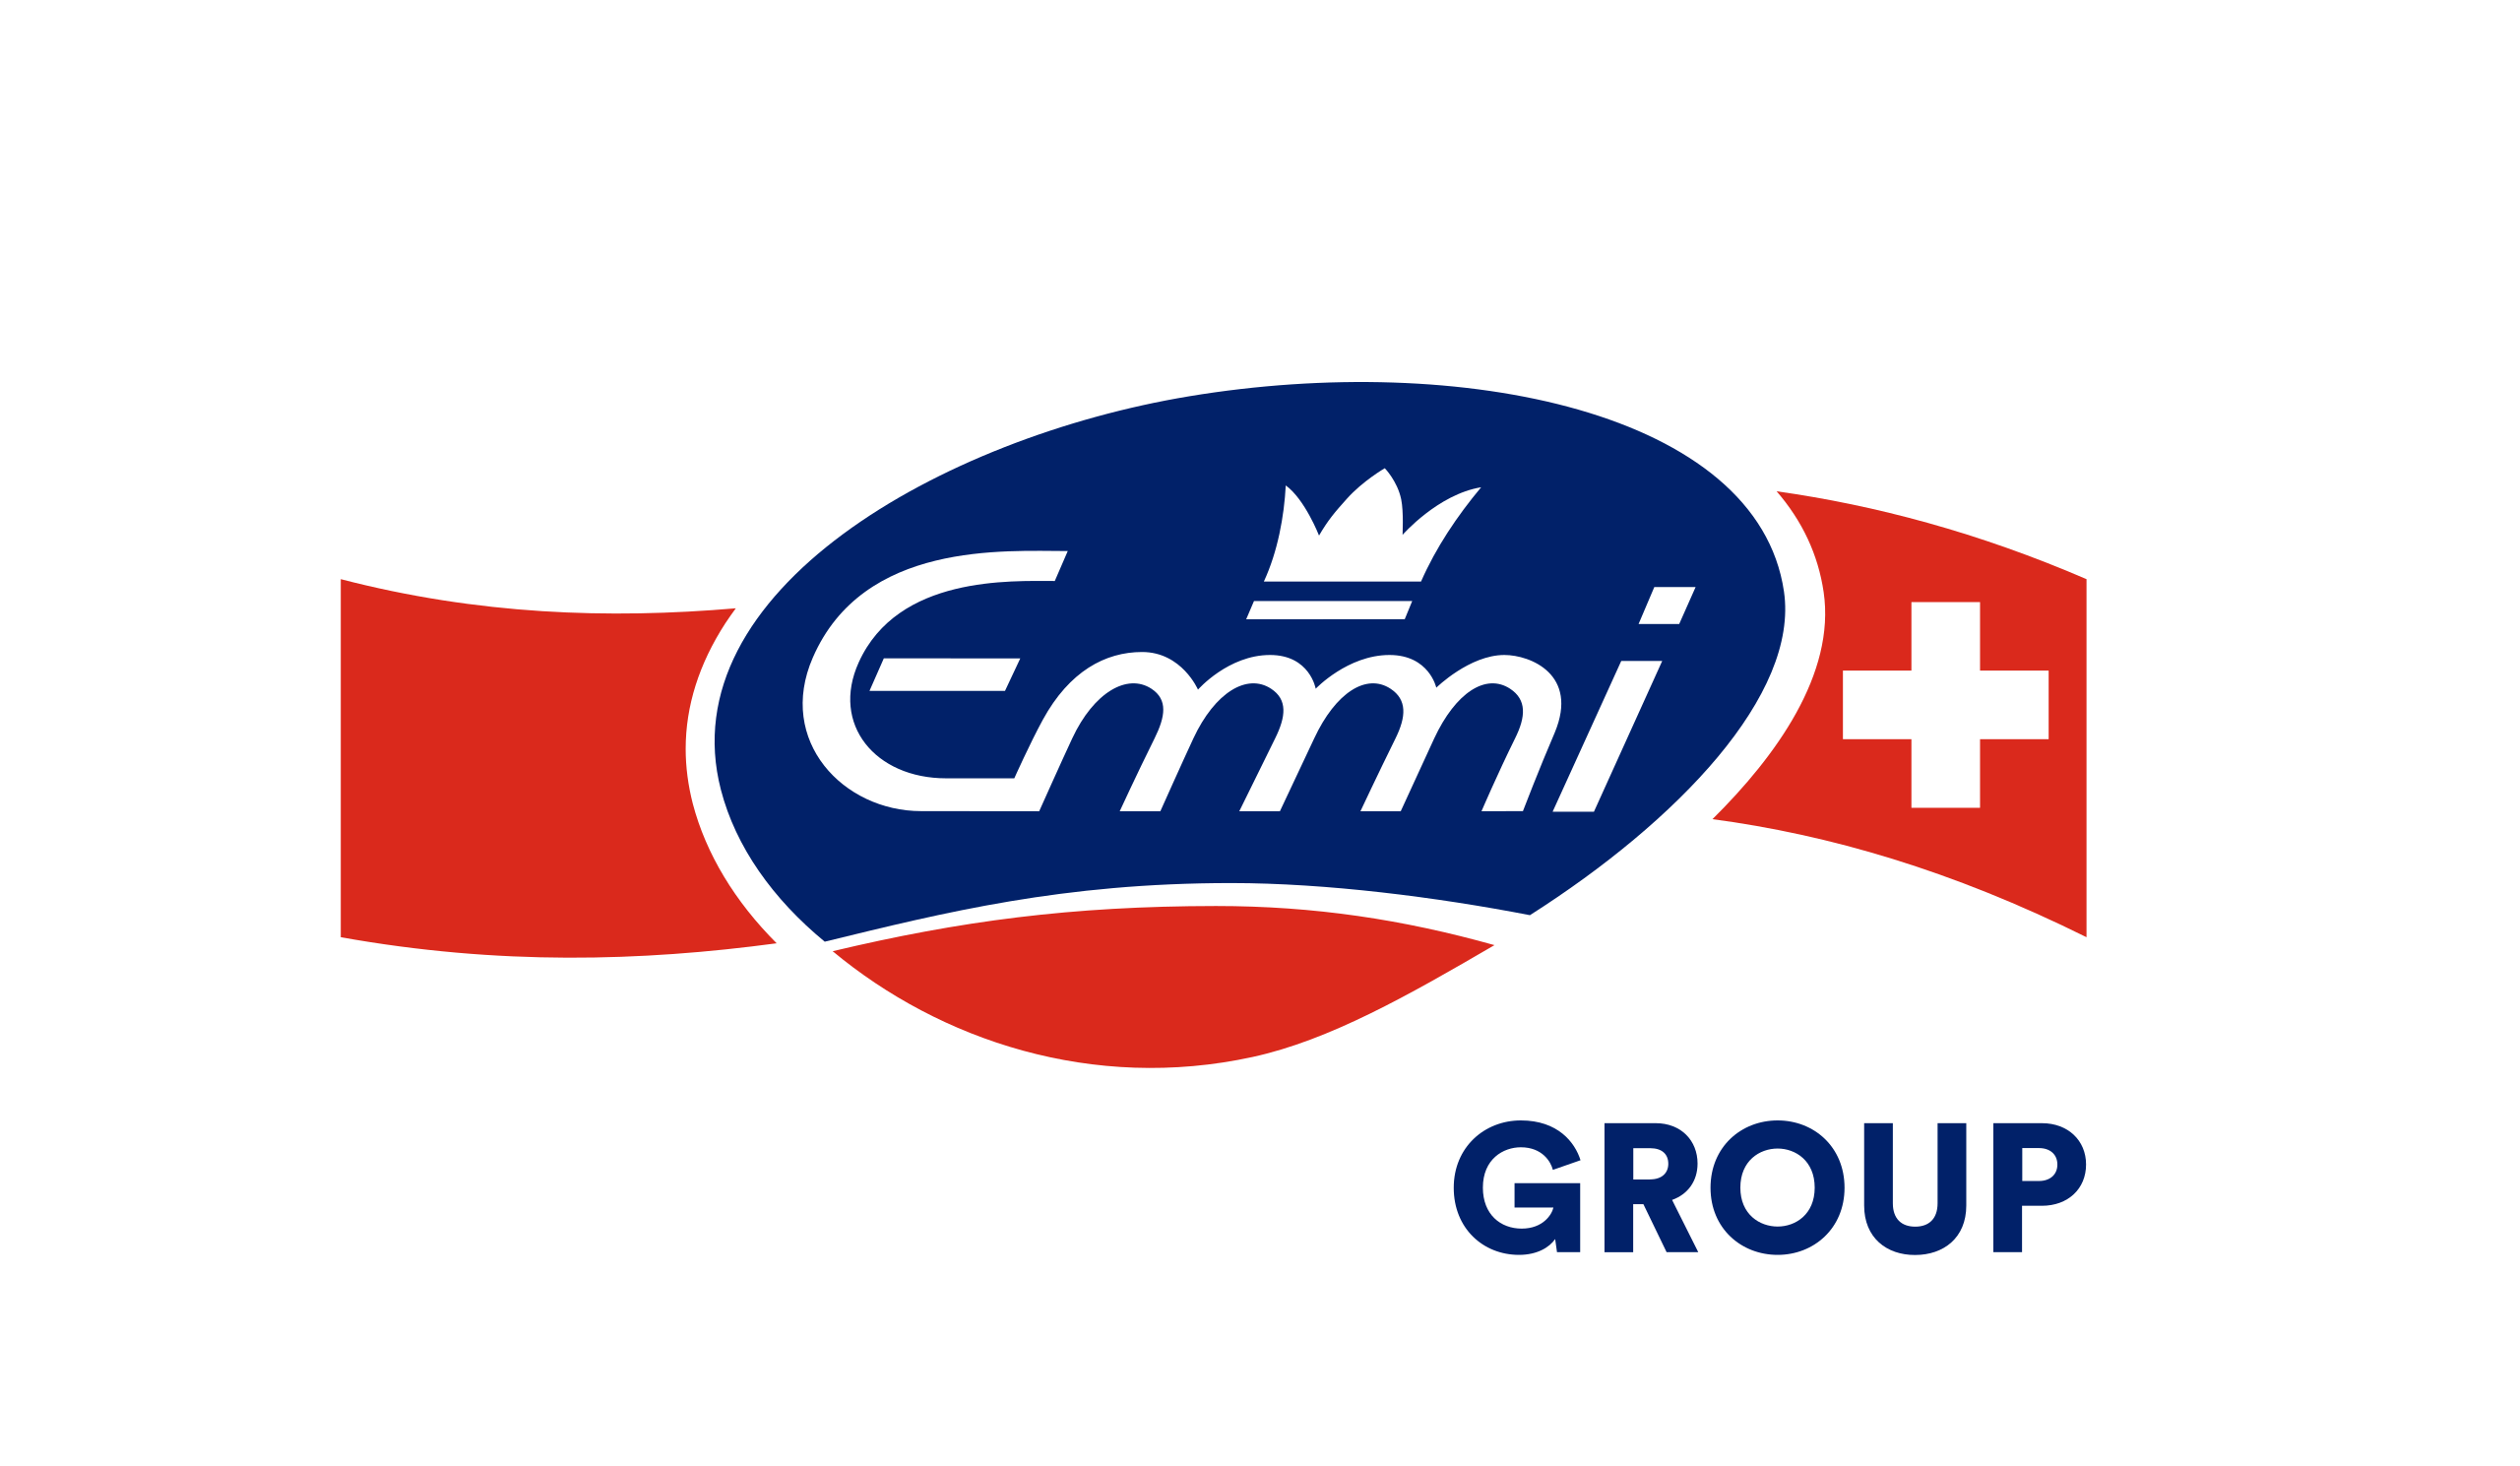 Emmi Logo